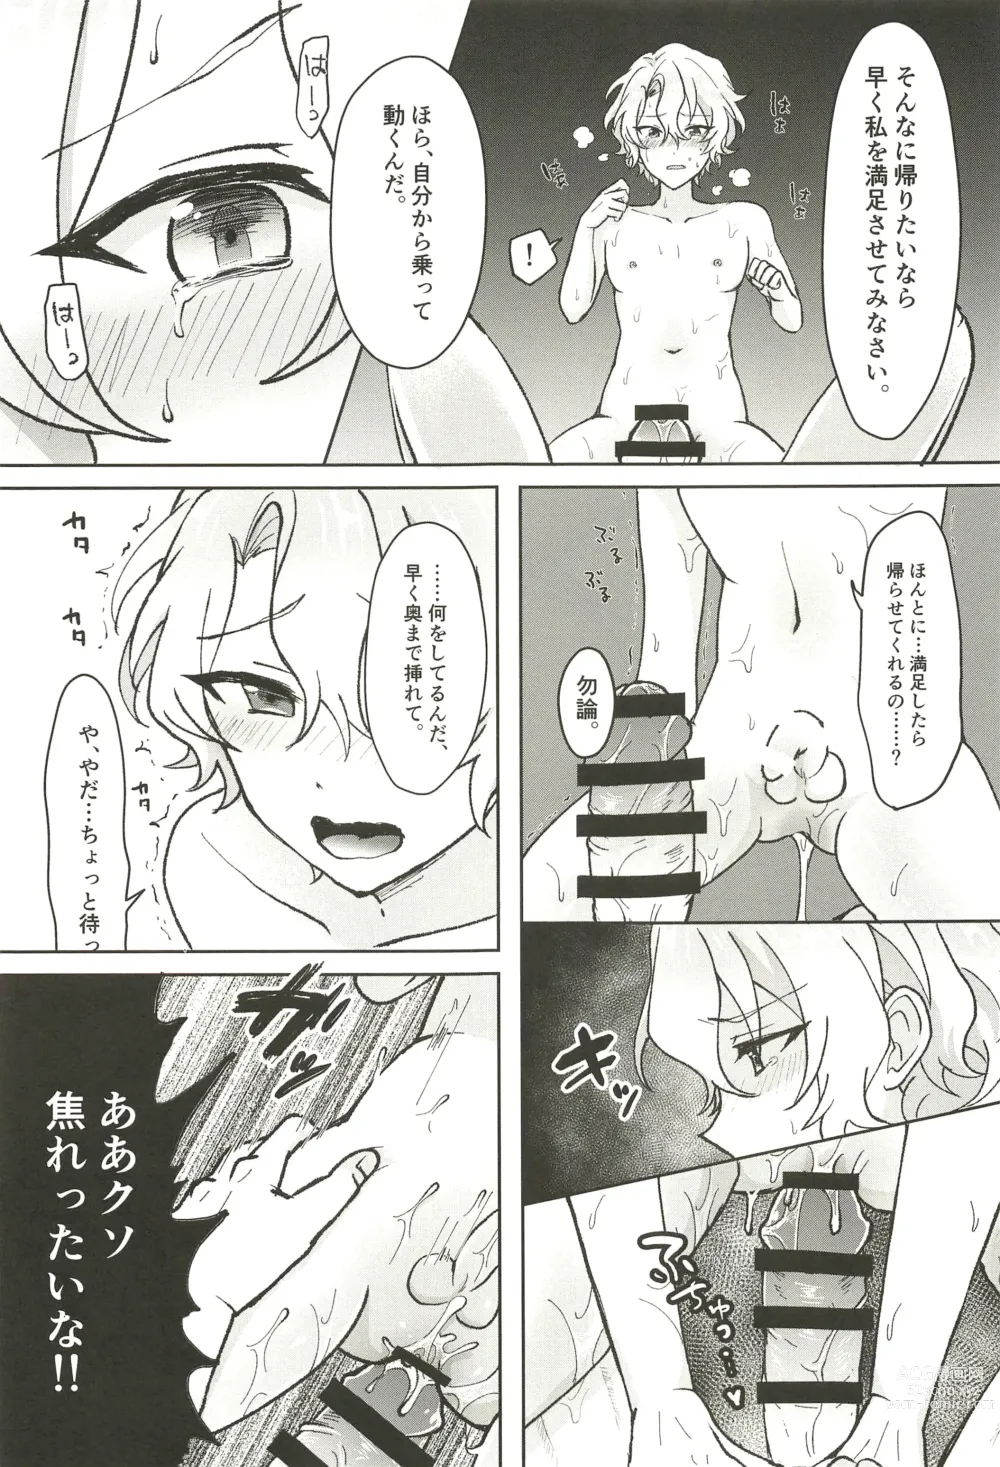 Page 55 of doujinshi Ochiru.